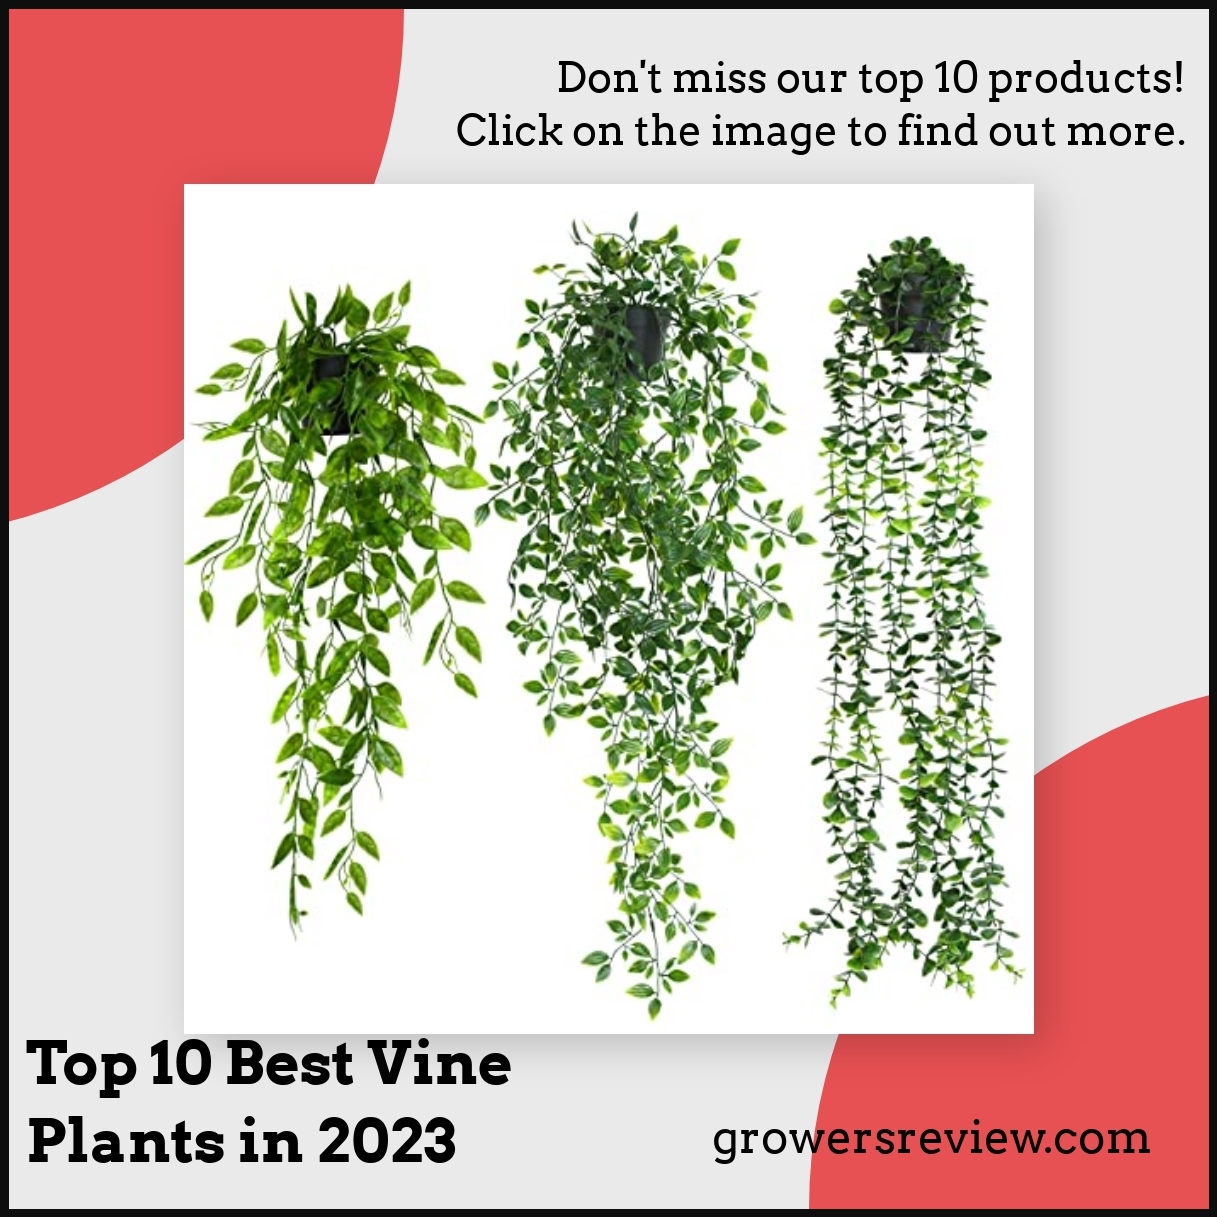 Top 10 Best Vine Plants in 2023